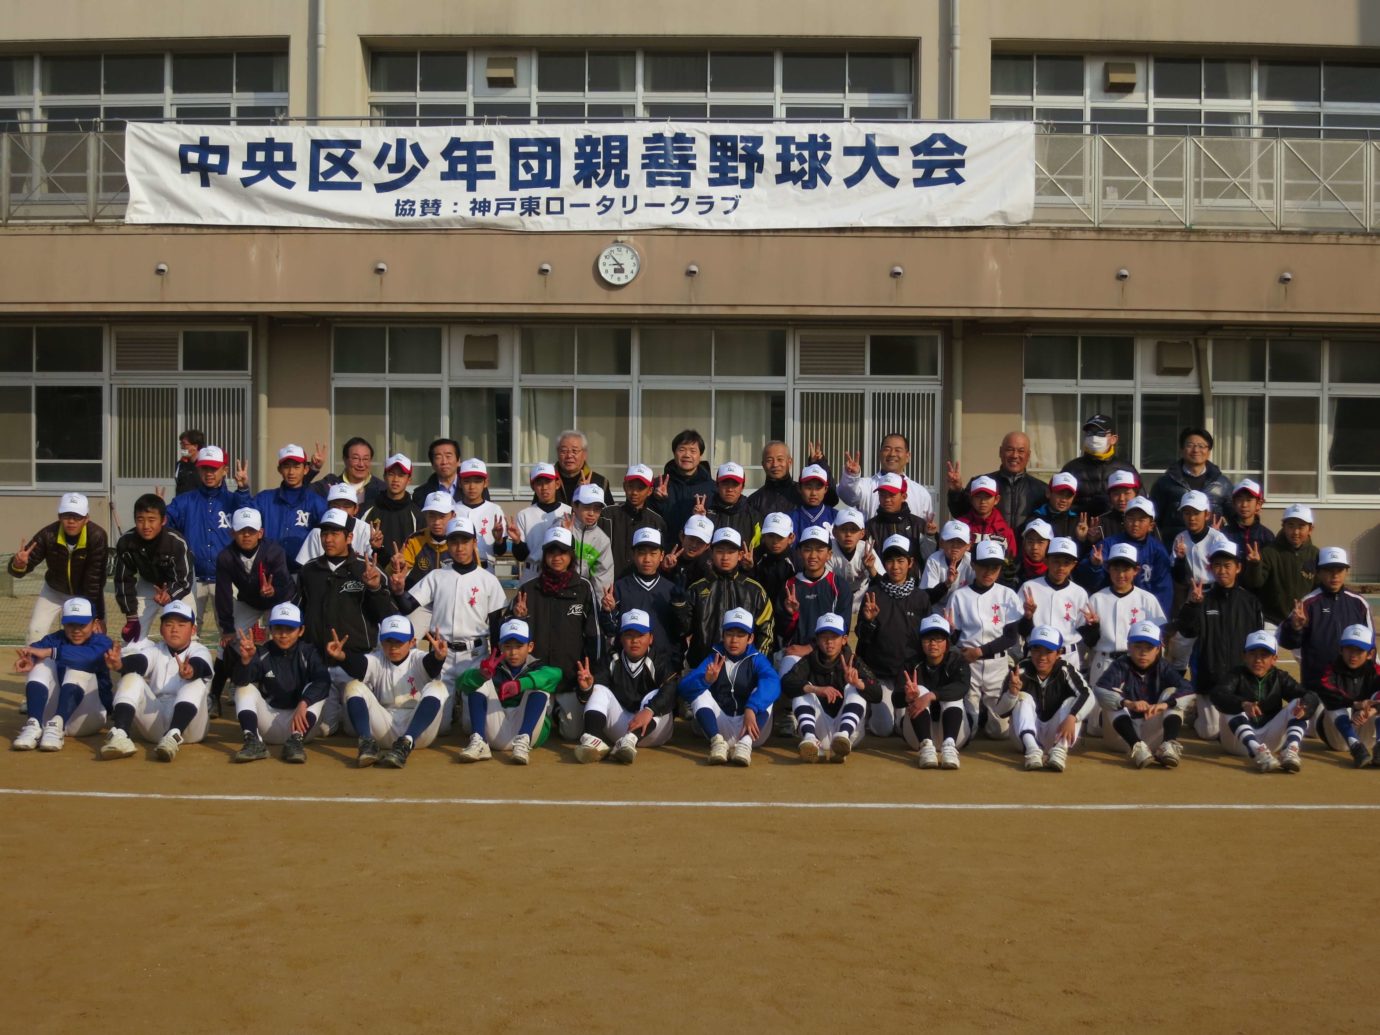 「第６回中央区少年団親善野球大会神戸東ロータリークラブ杯」開催される